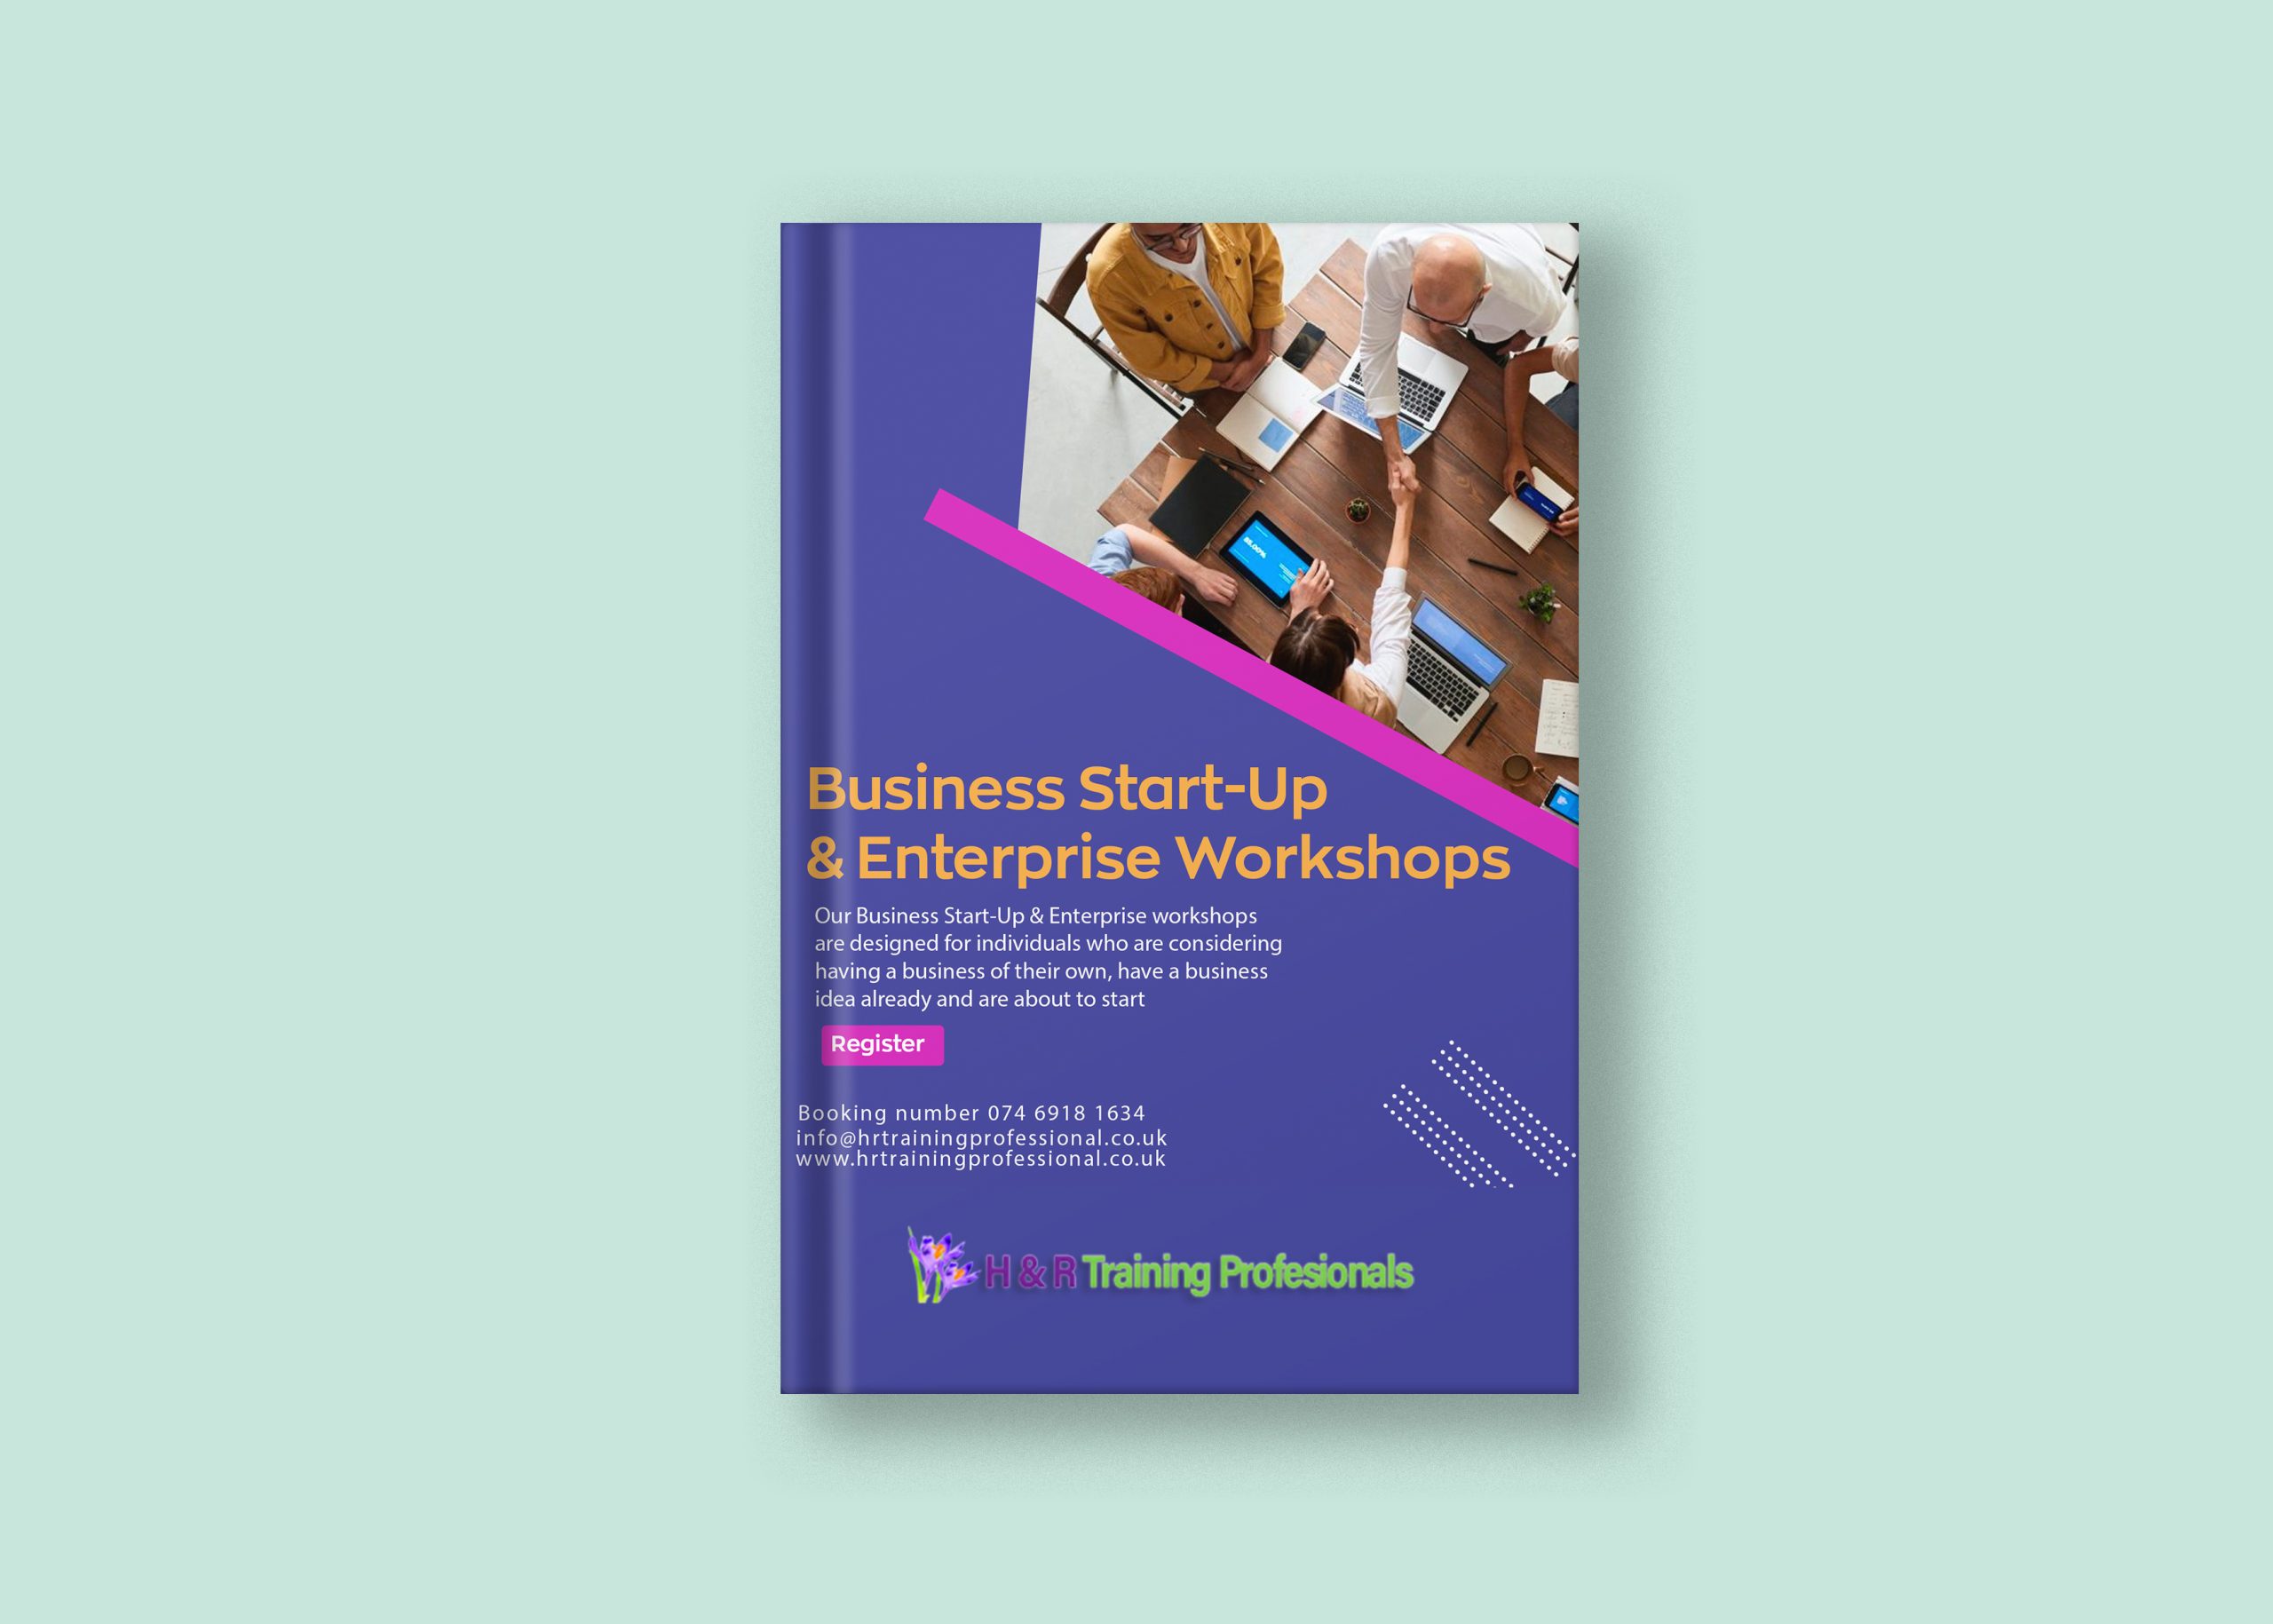 Business Start-Up & Enterprise Workshops